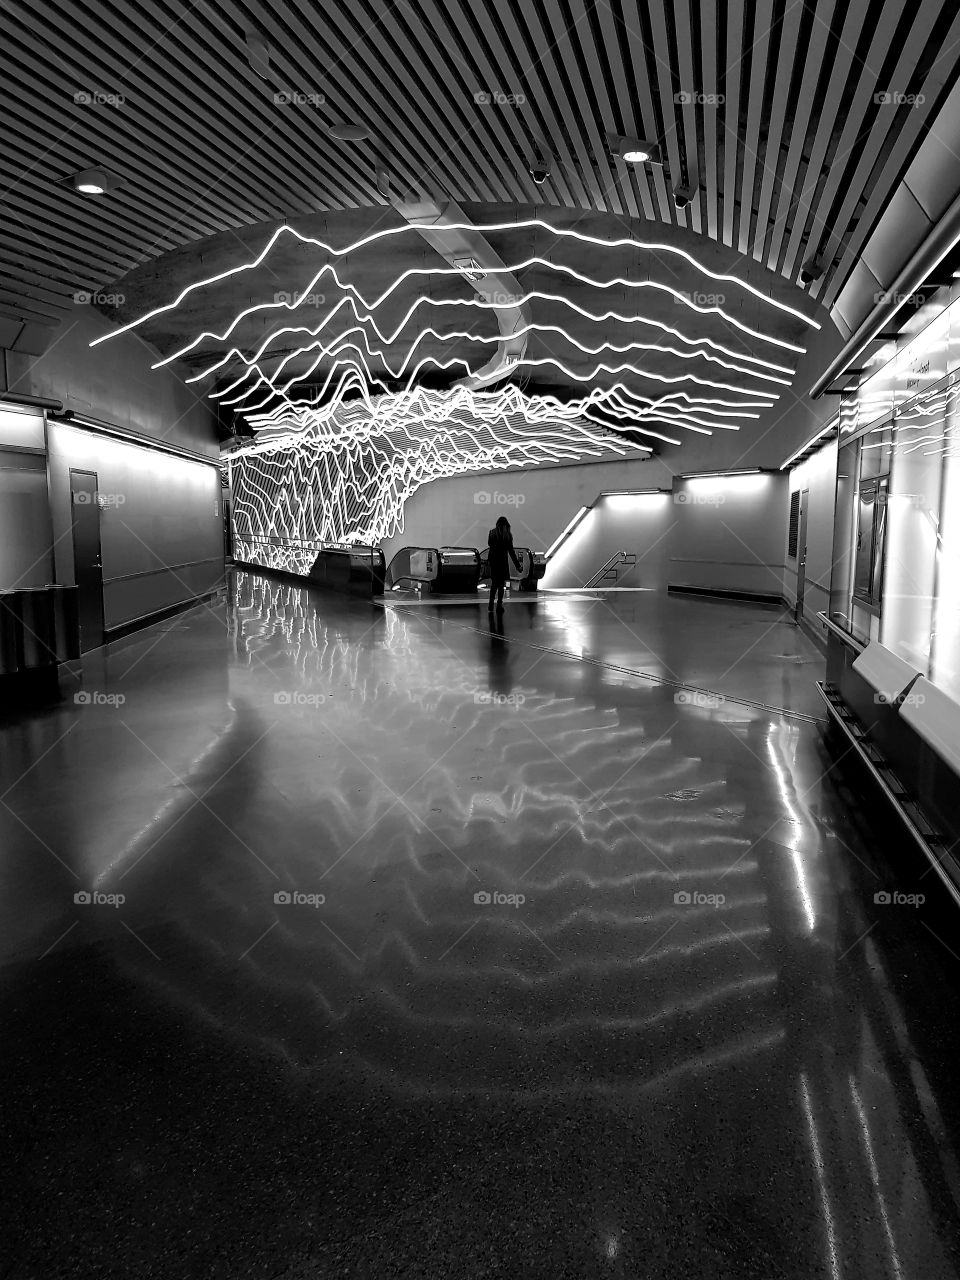 stockholm metro subway citybanan odenplan